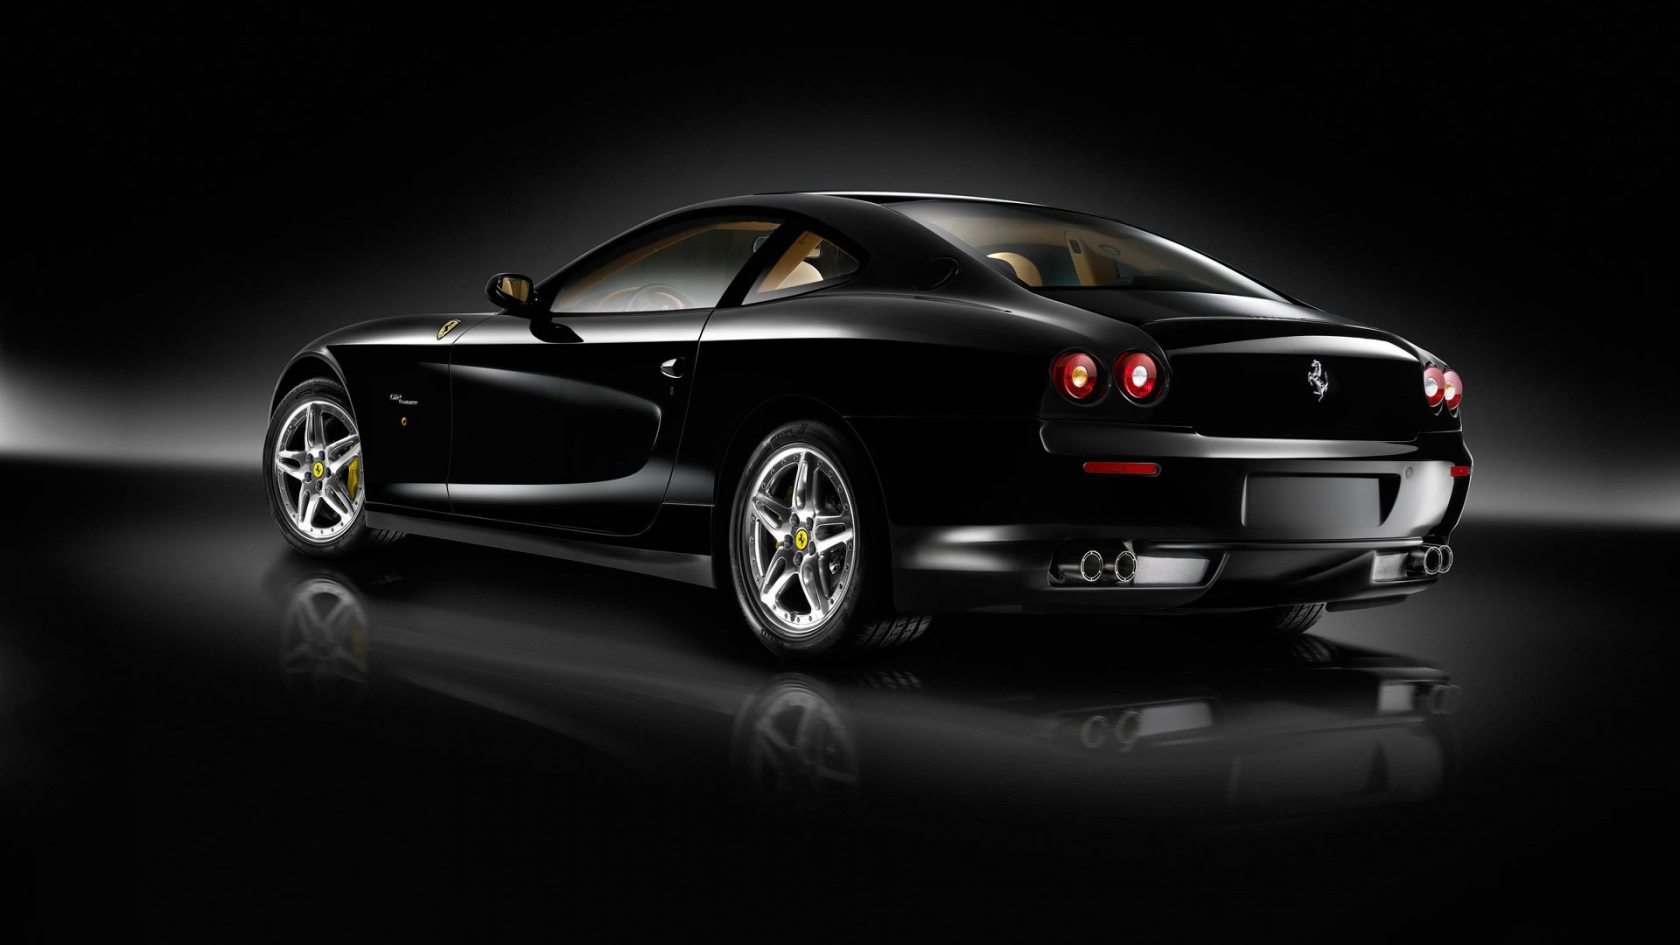 Superb Black Ferrari for 1680 x 945 HDTV resolution